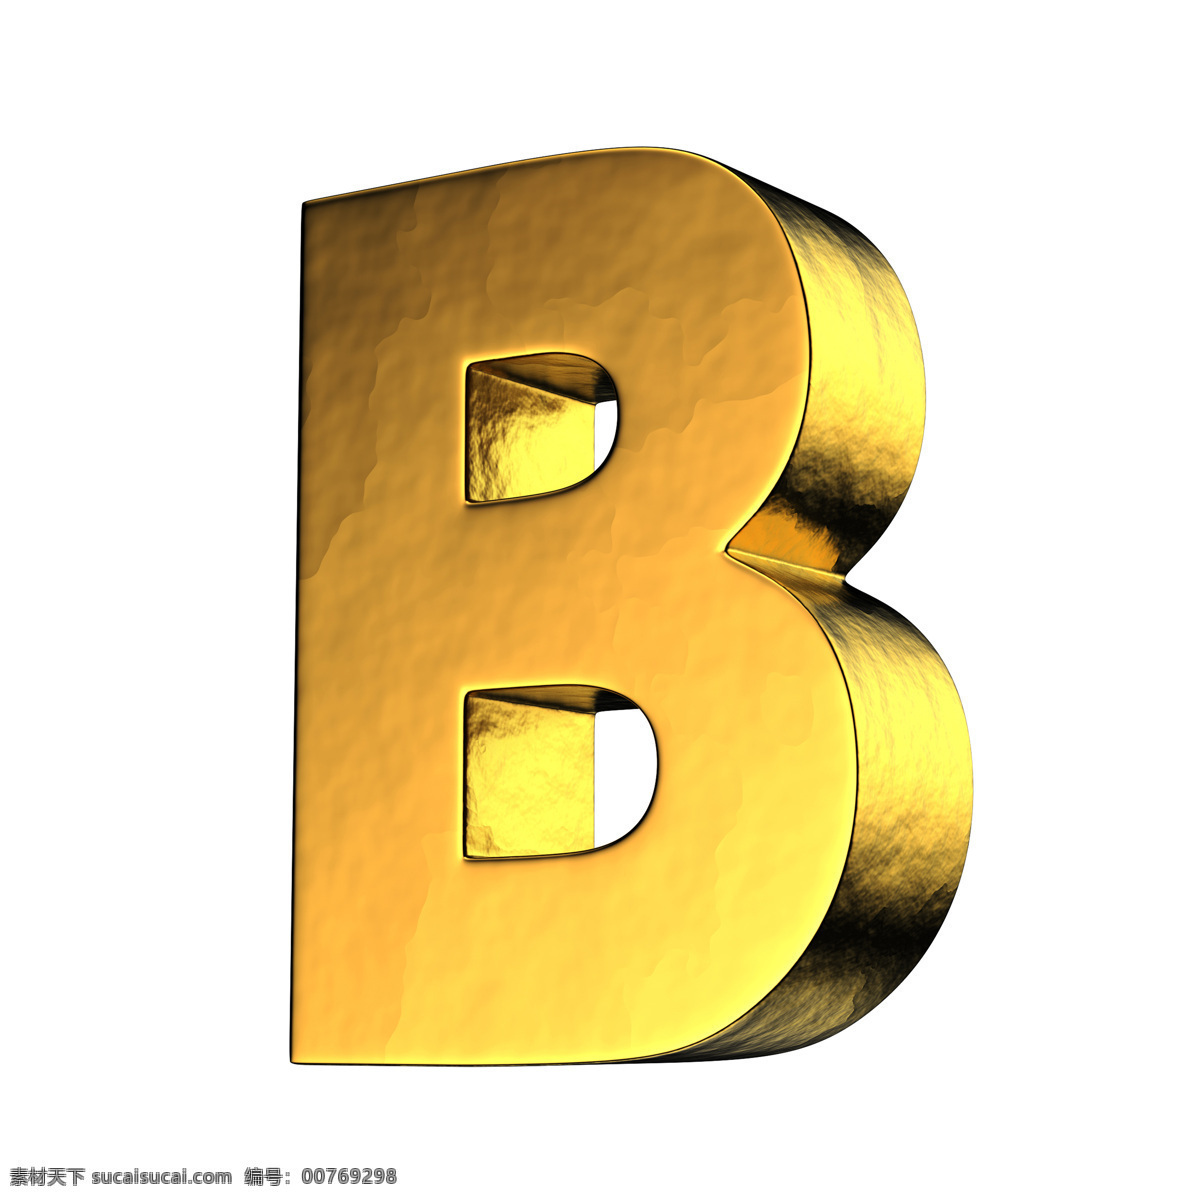 金色 金属 金属字母 时尚 质感 装饰 字母 设计素材 模板下载 3d立体字母 3d字母设计 字母设计 数字主题 矢量图 艺术字